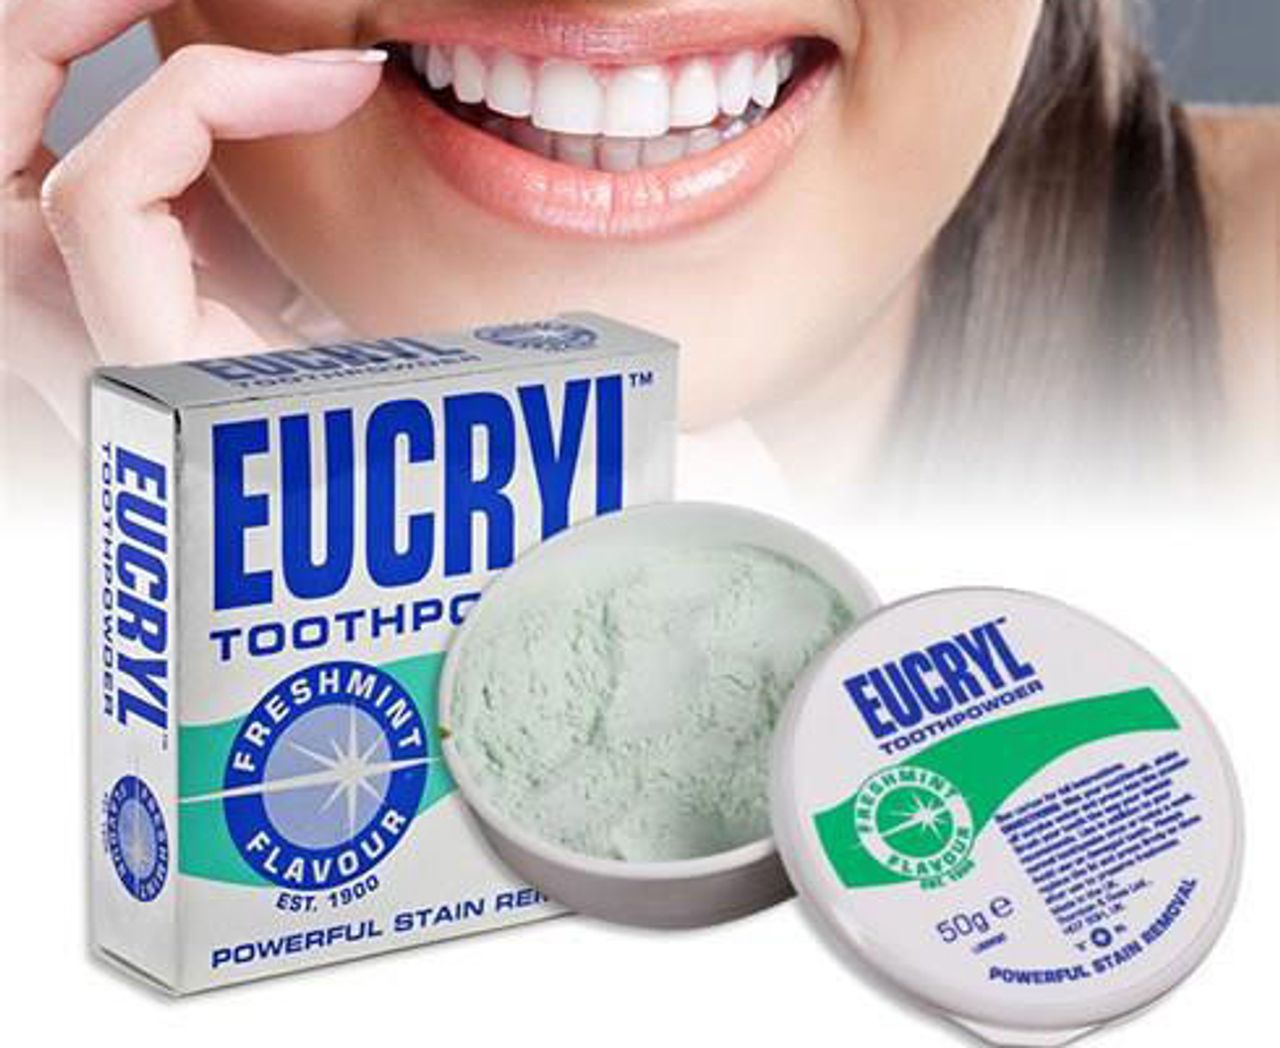 bột tẩy trắng răng Eucryl review, bột tẩy trắng răng Eucryl bán ở đâu, bột tẩy trắng răng Eucryl có tốt không, review bột tẩy trắng răng Eucryl, cách sử dụng bột tẩy trắng răng Eucryl